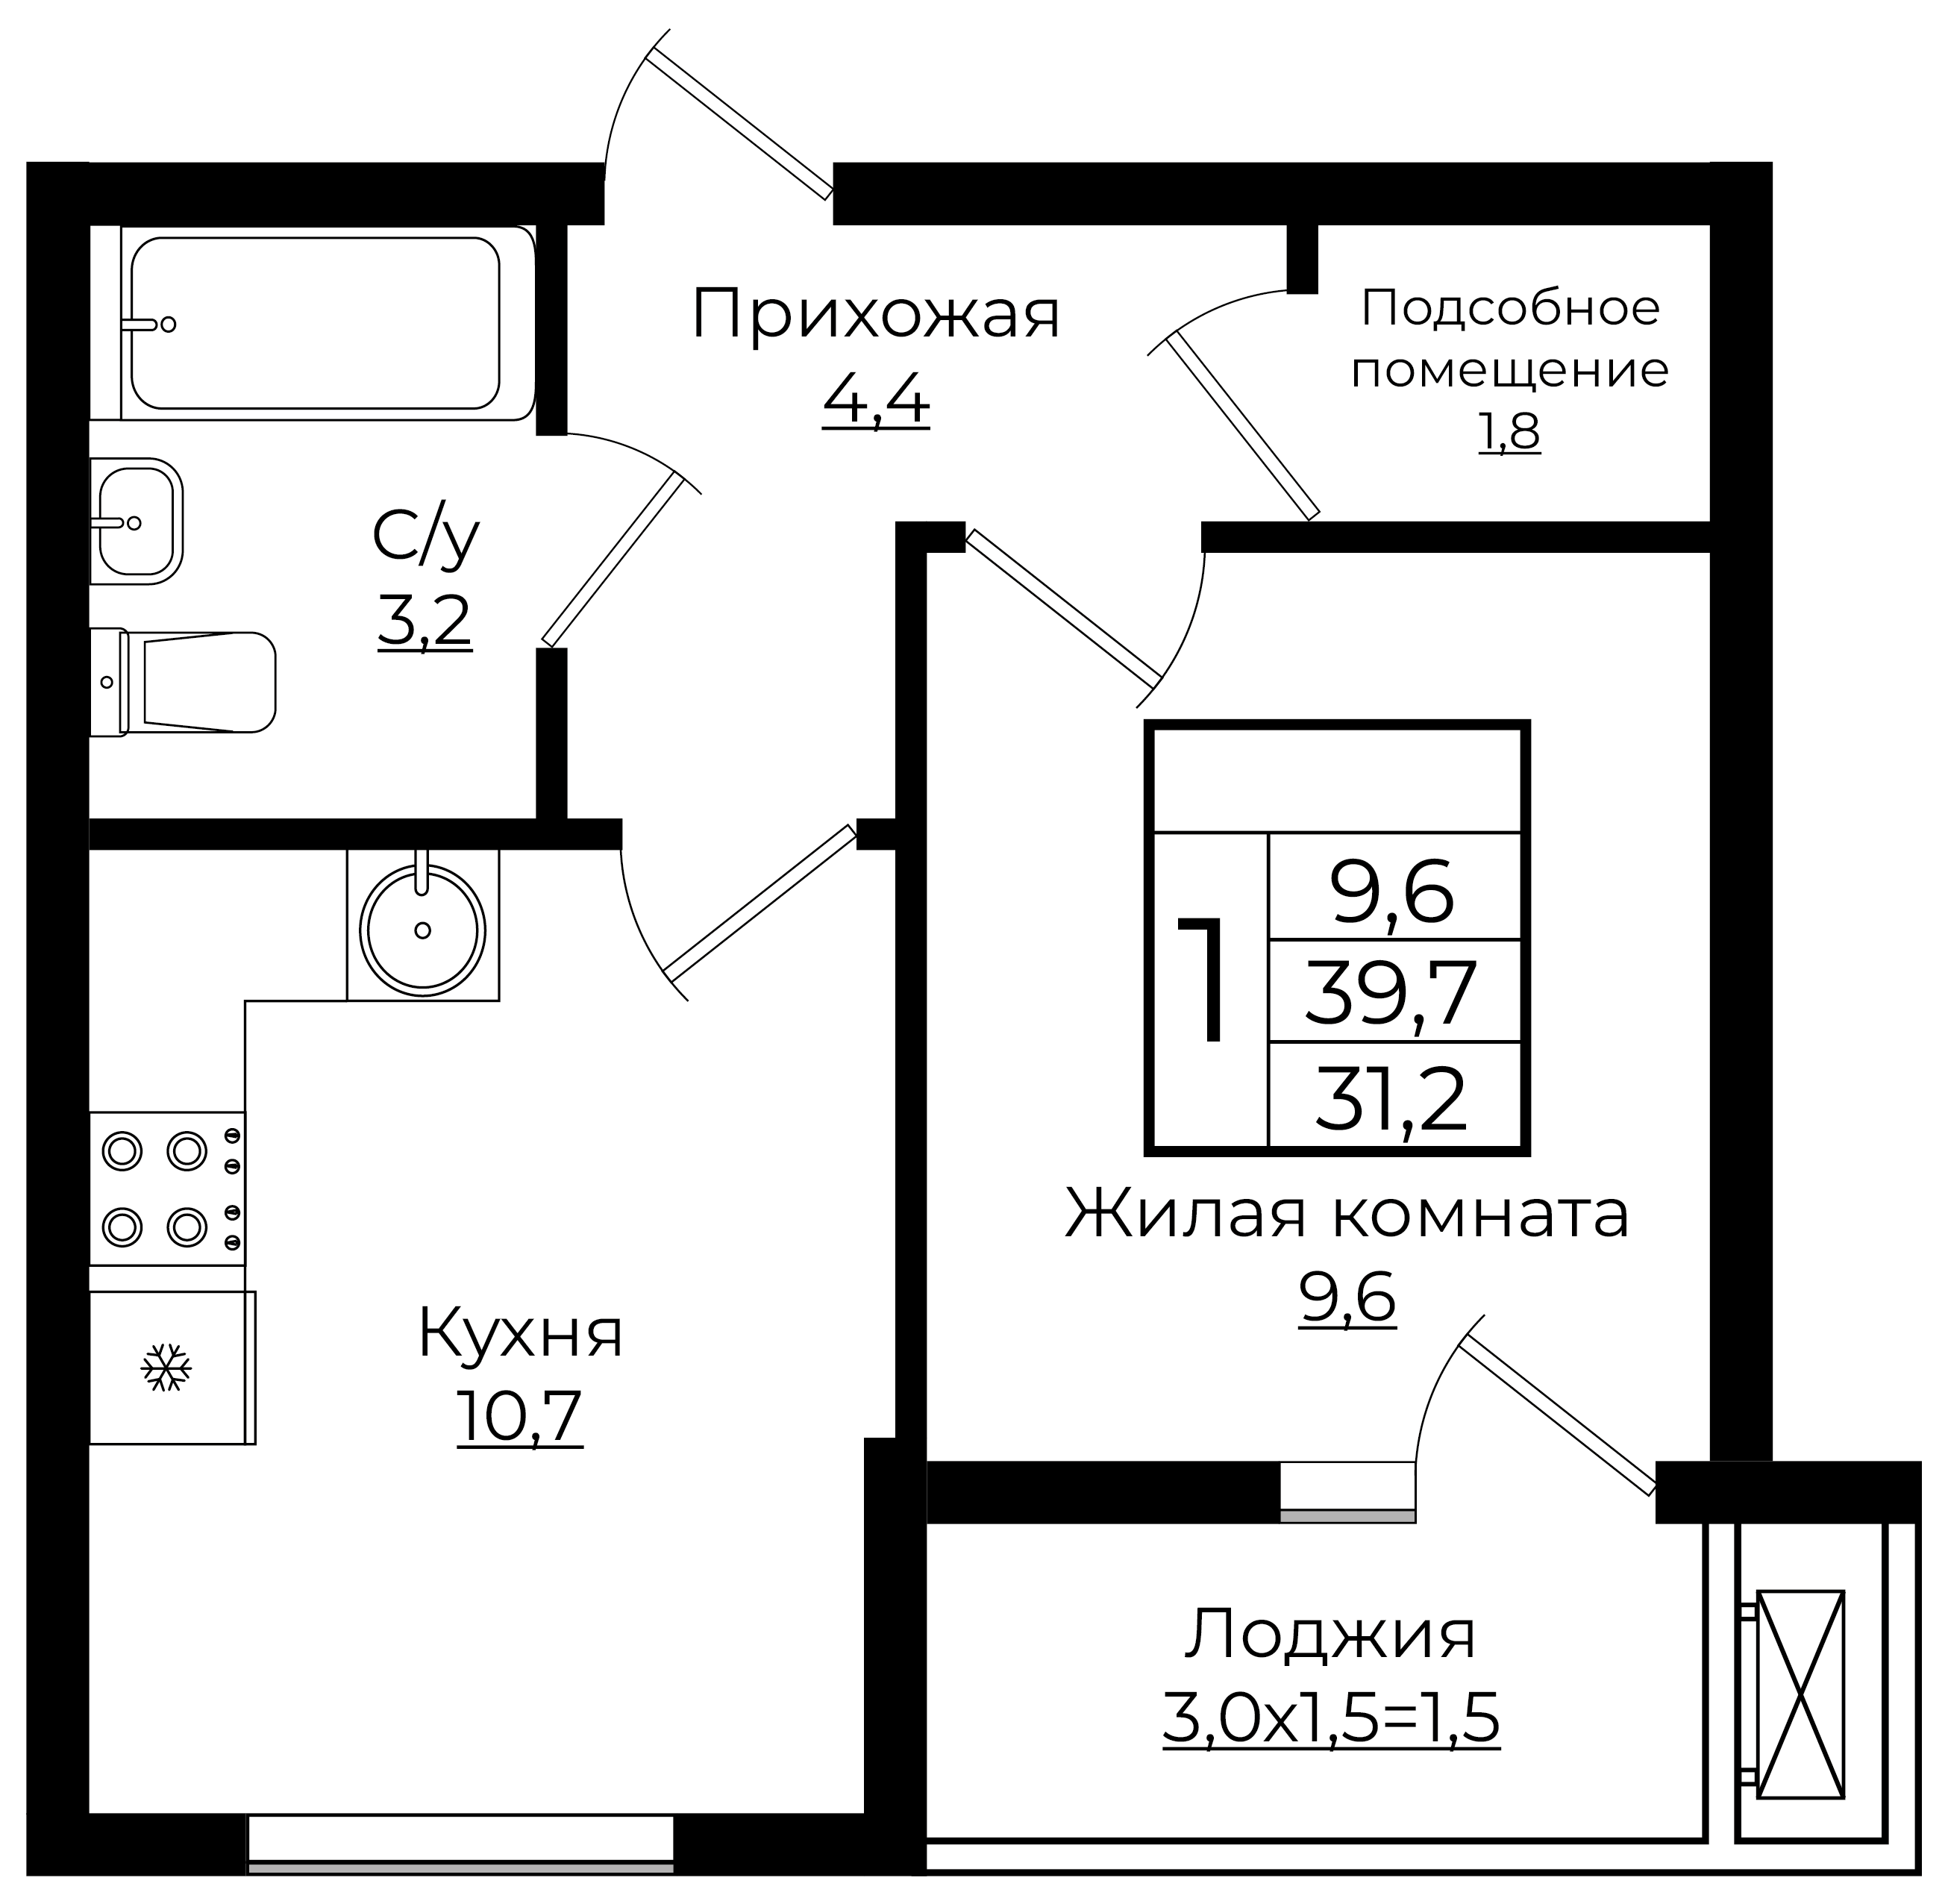 1-комнатная 31.2 м2